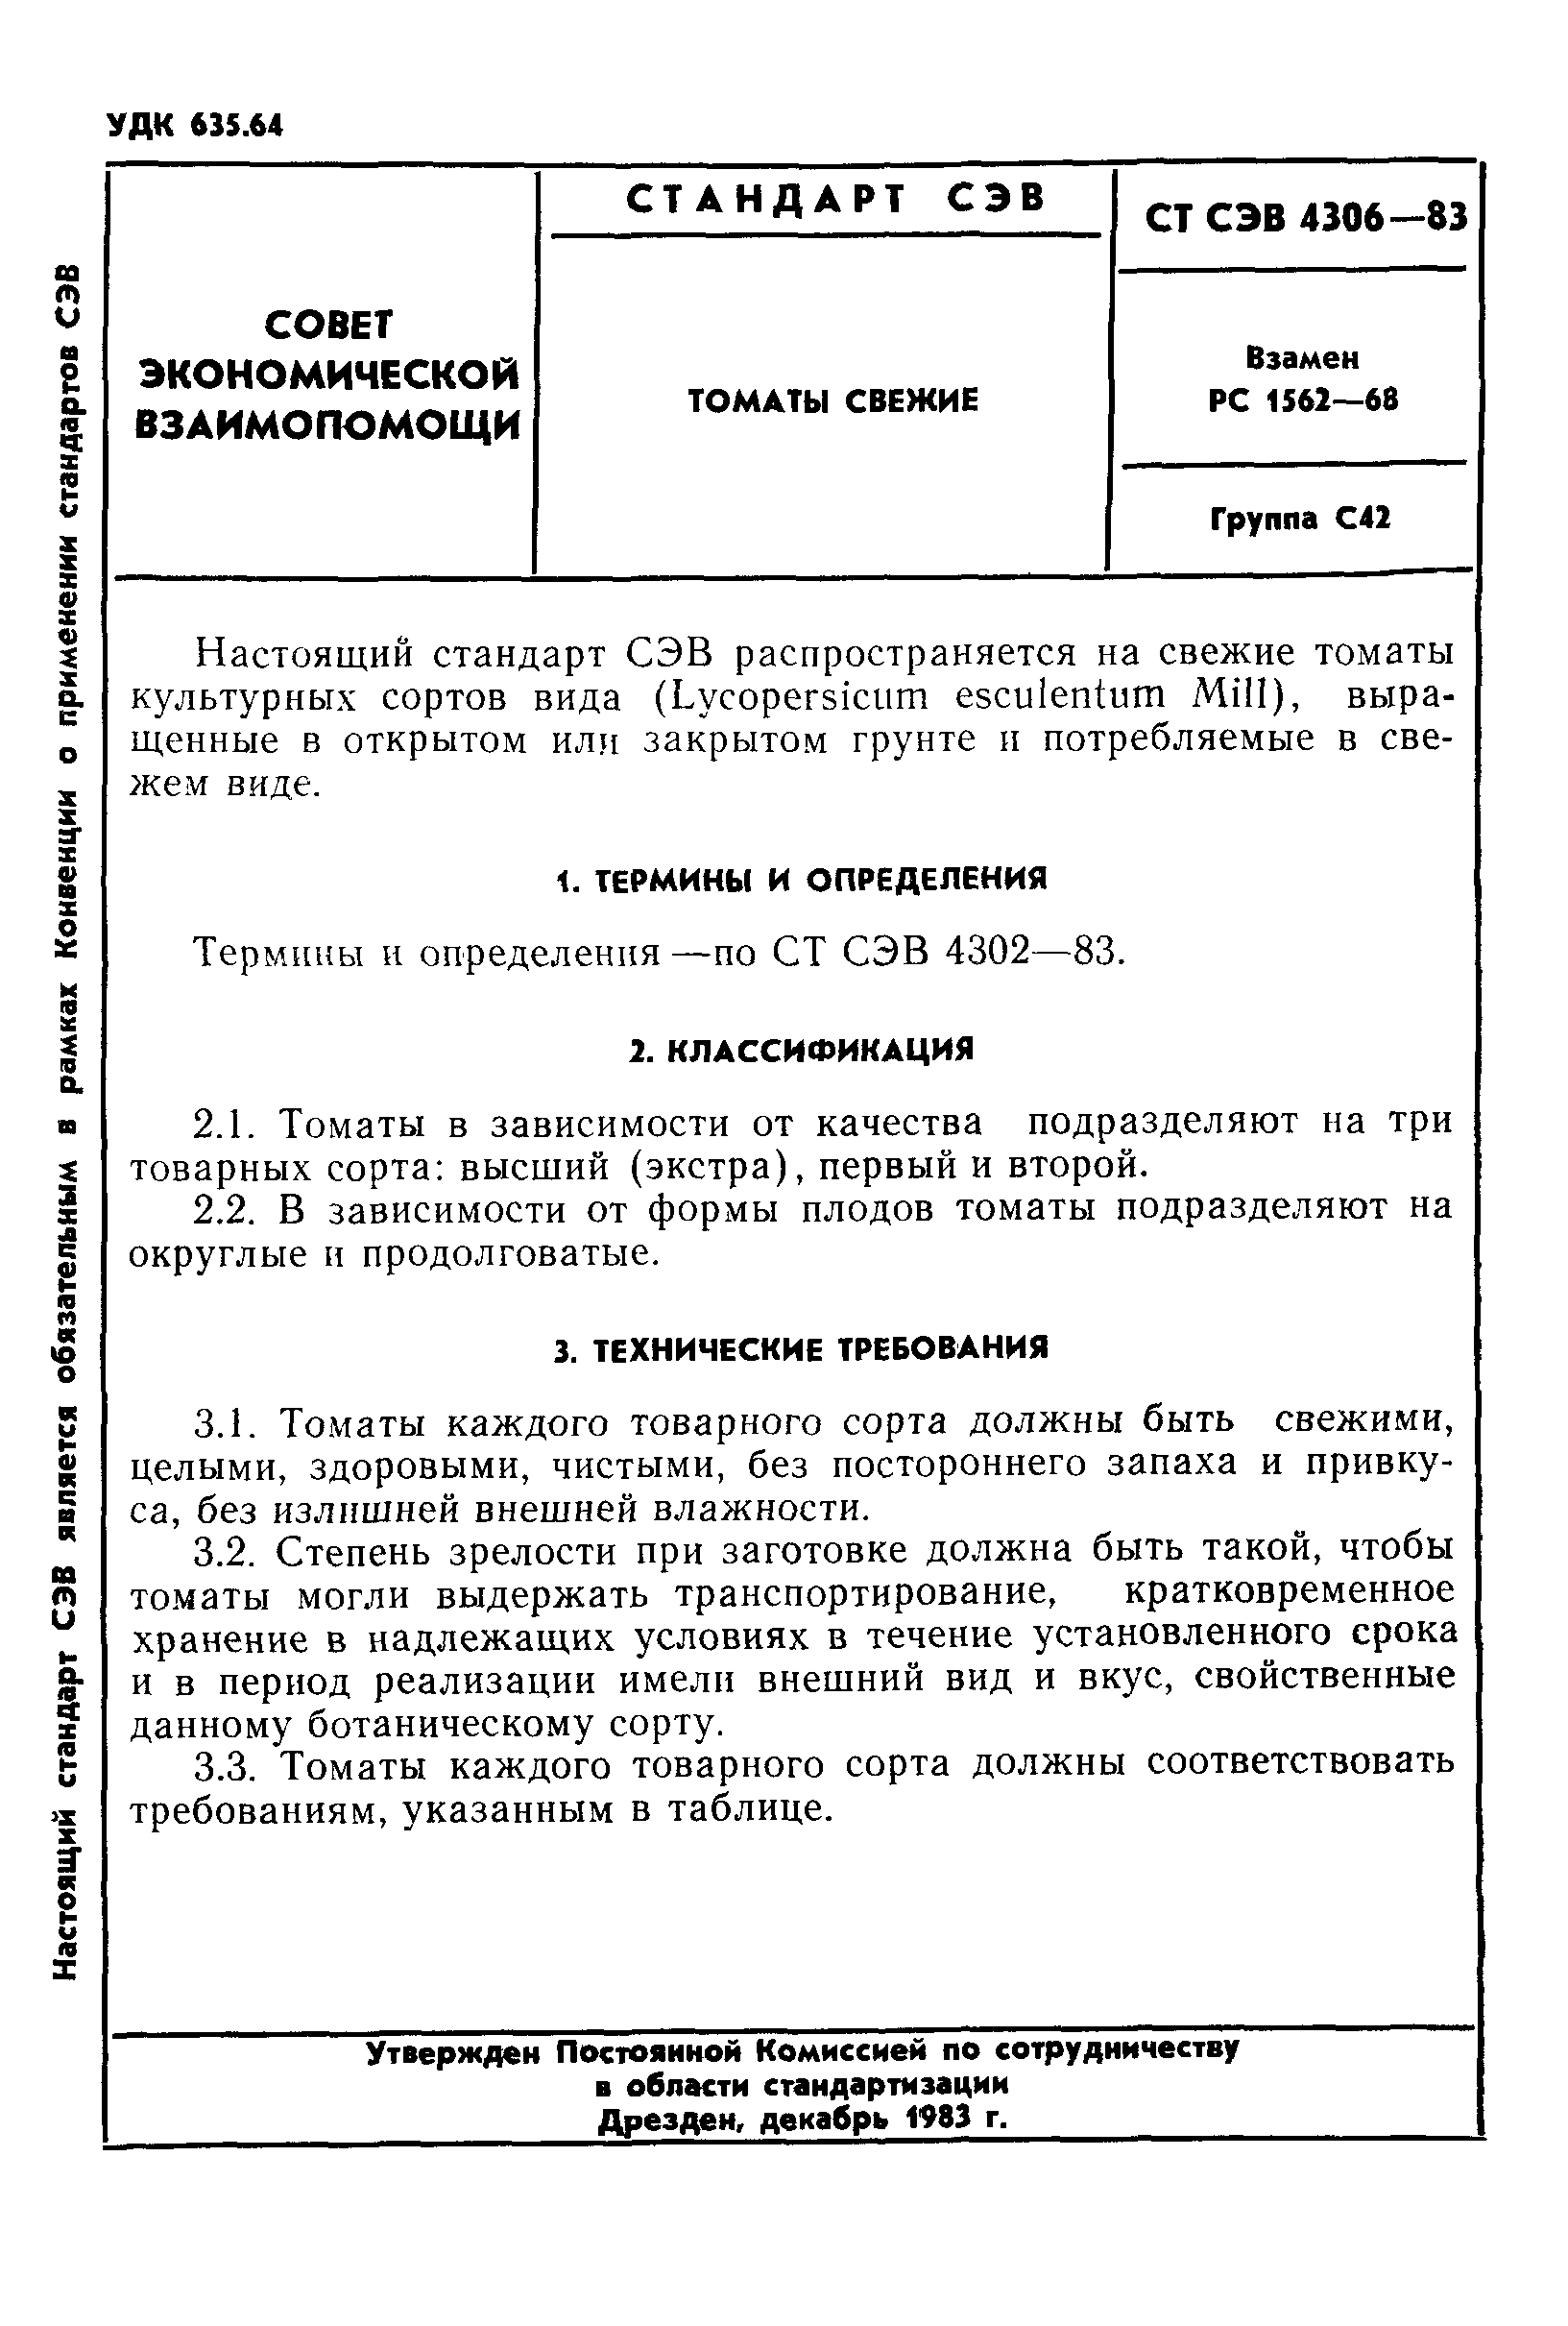 СТ СЭВ 4306-83